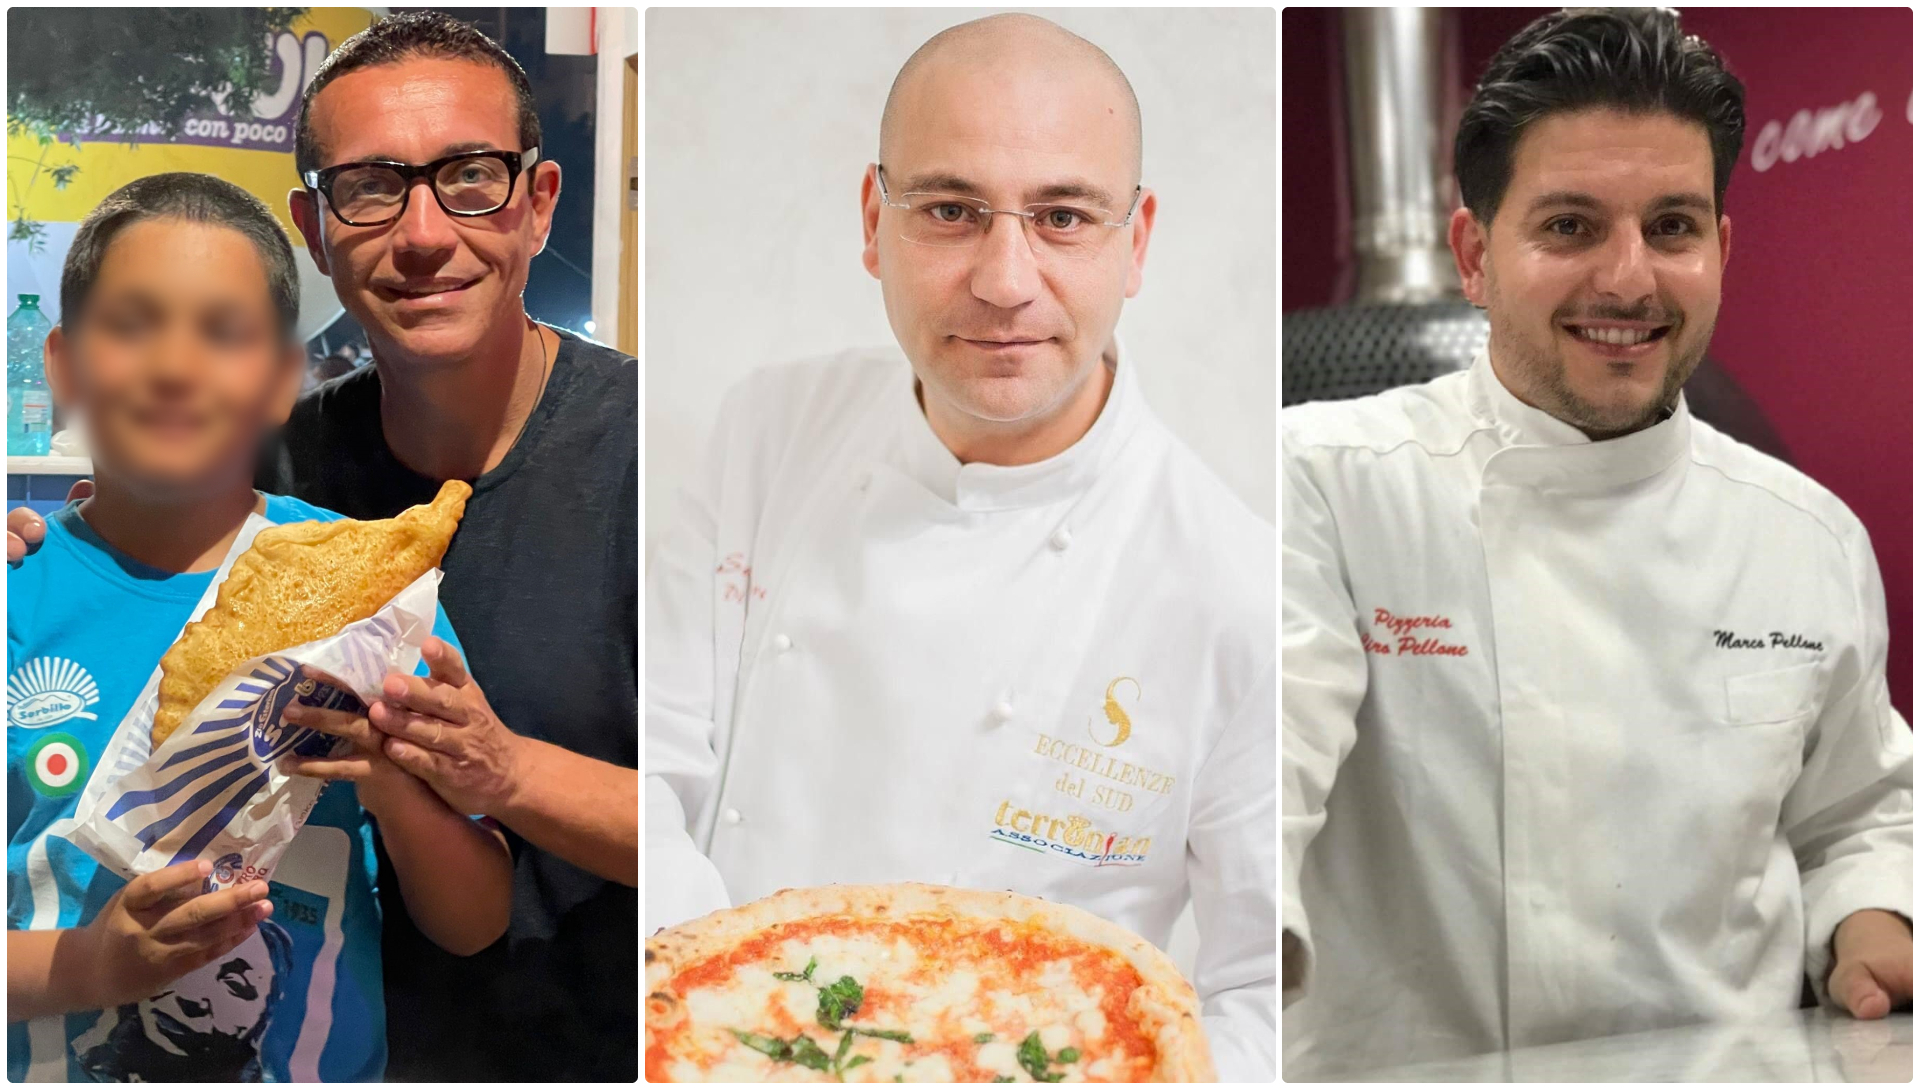 Da sinistra a destra Gino Sorbillo, Salvatore Di Matteo e Marco Pellone, maestri pizzaioli napoletani, rispondono a Flavio Briatore.